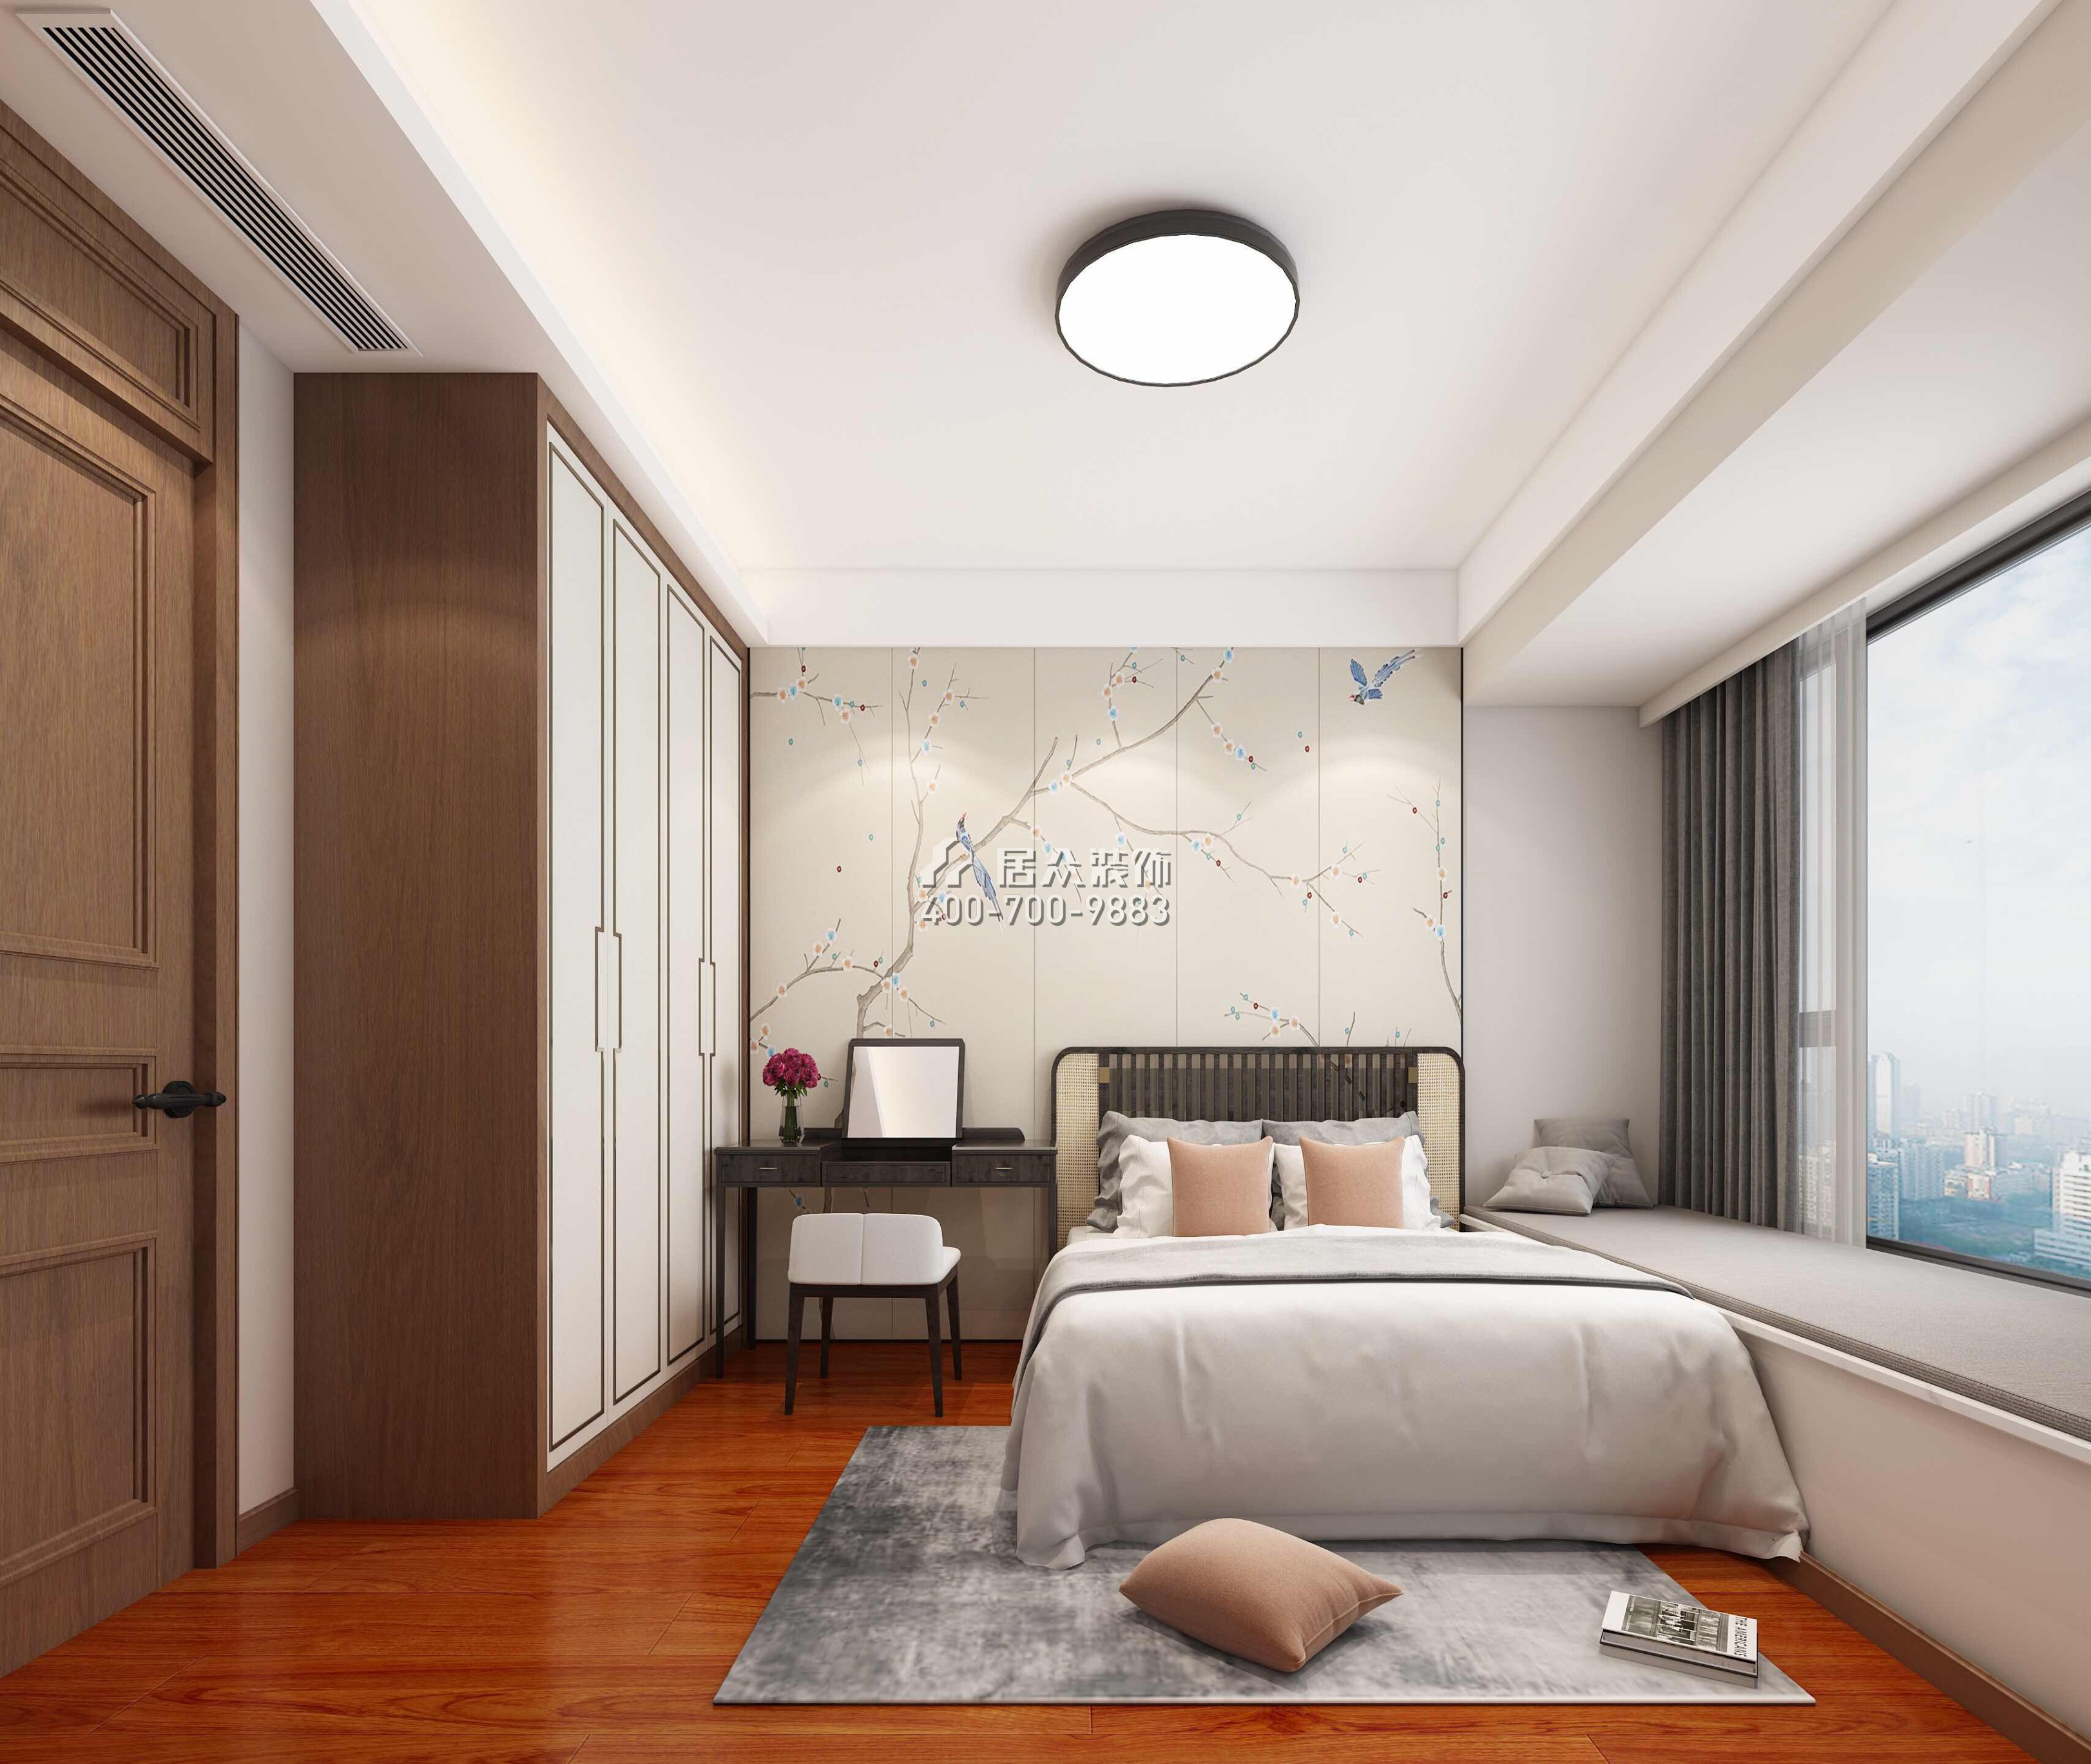 寶生midtown 207平方米中式風格平層戶型臥室裝修效果圖